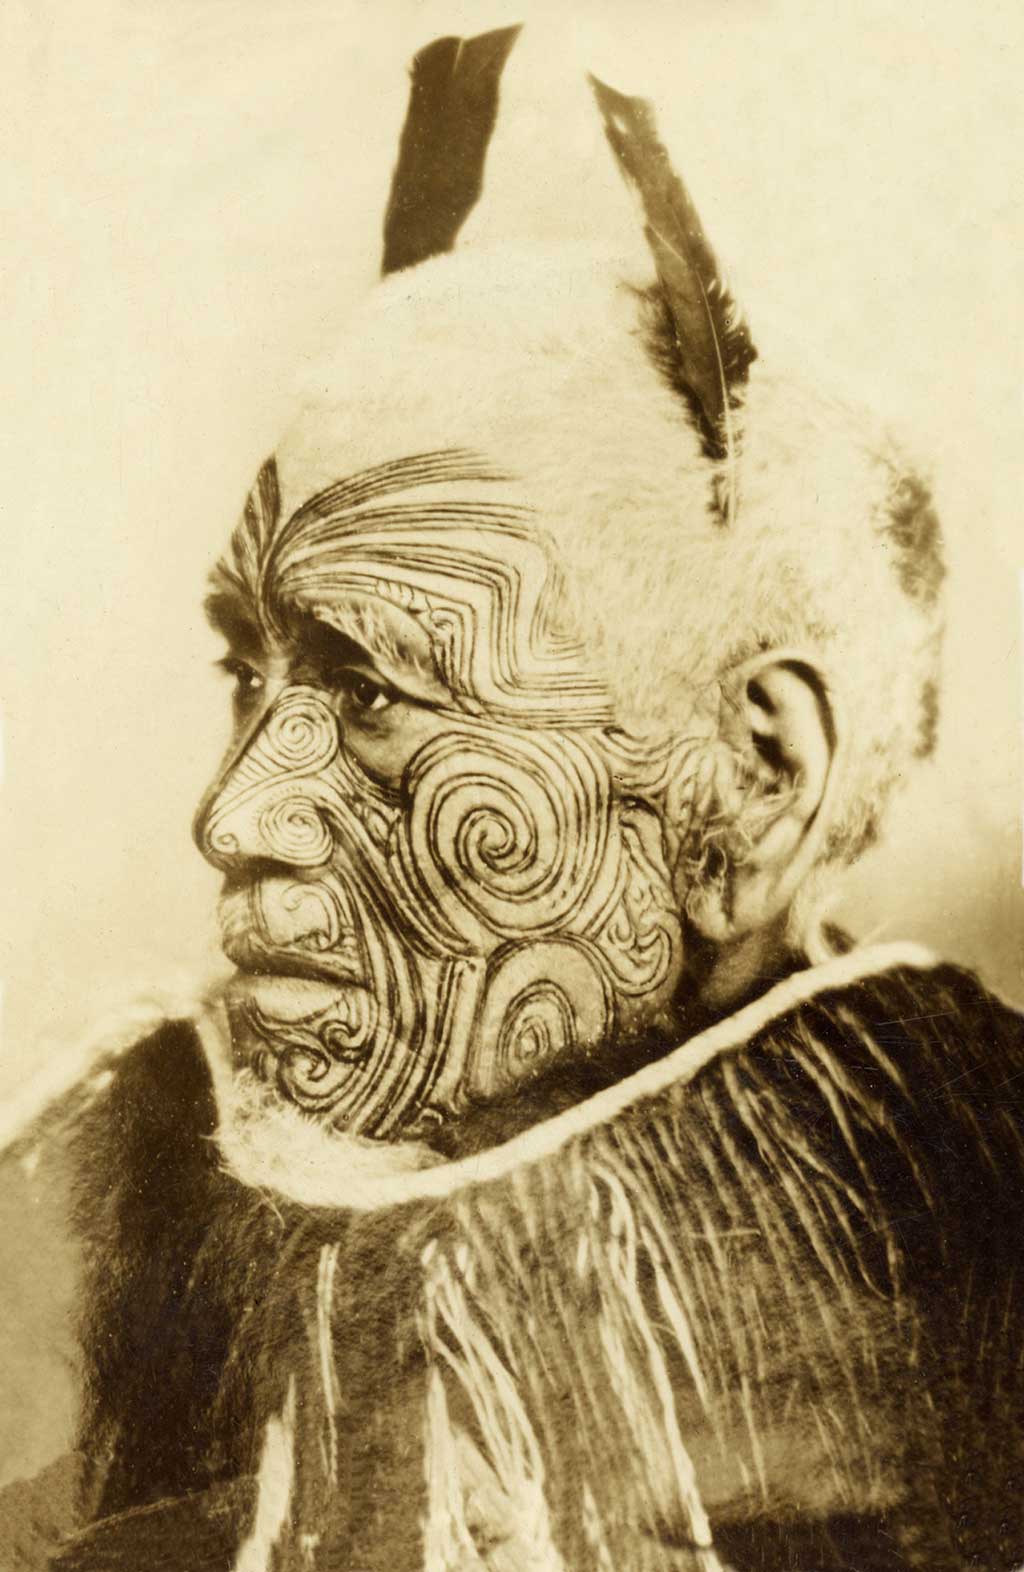 Chân dung cổ điển của một người đàn ông cao cấp với hình xăm trên khuôn mặt